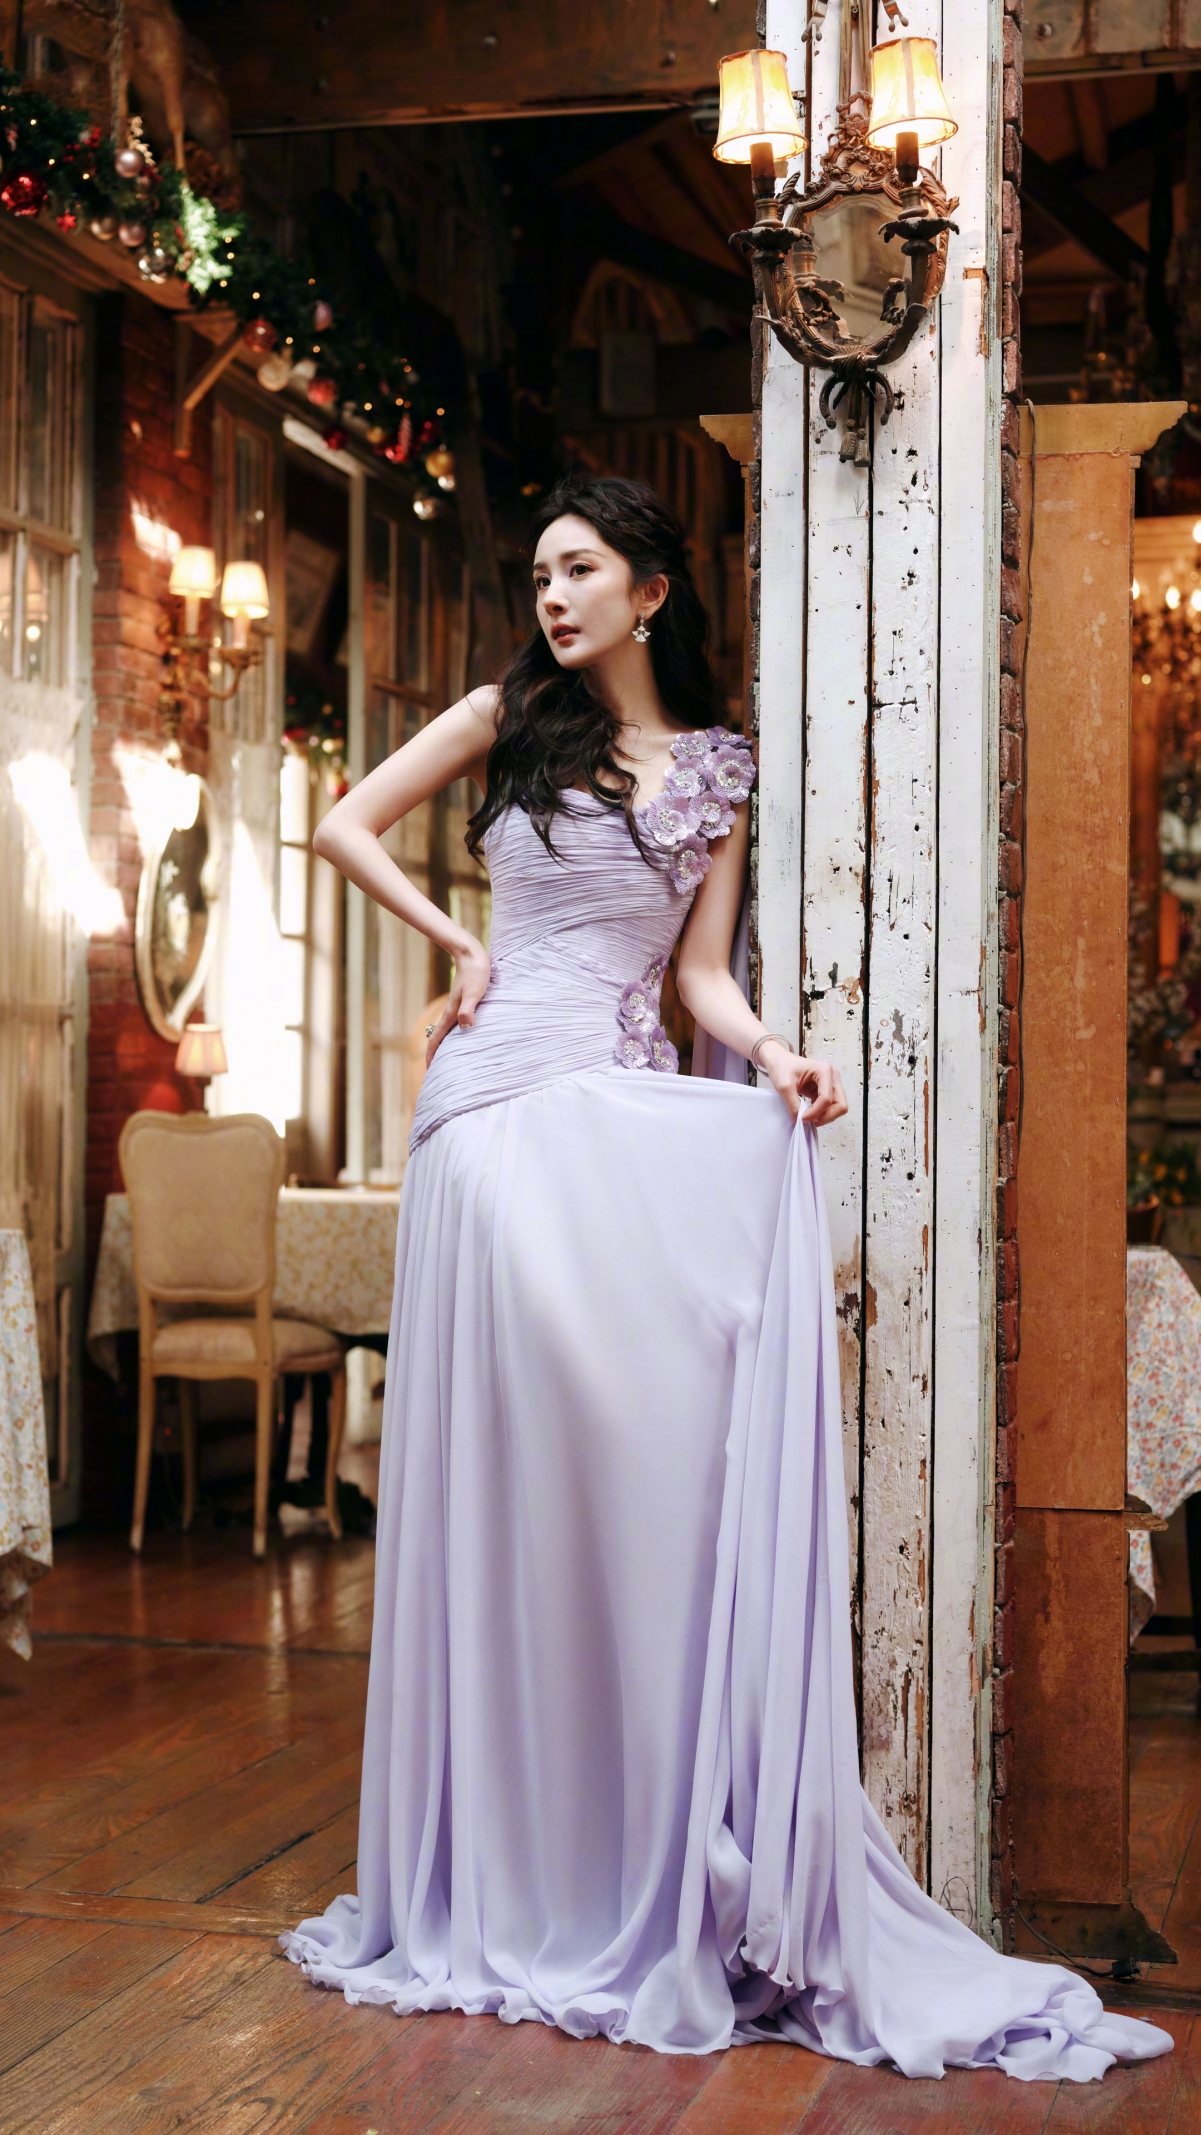 紫色长裙子气质优雅美女杨幂4K手机壁纸2160*3840